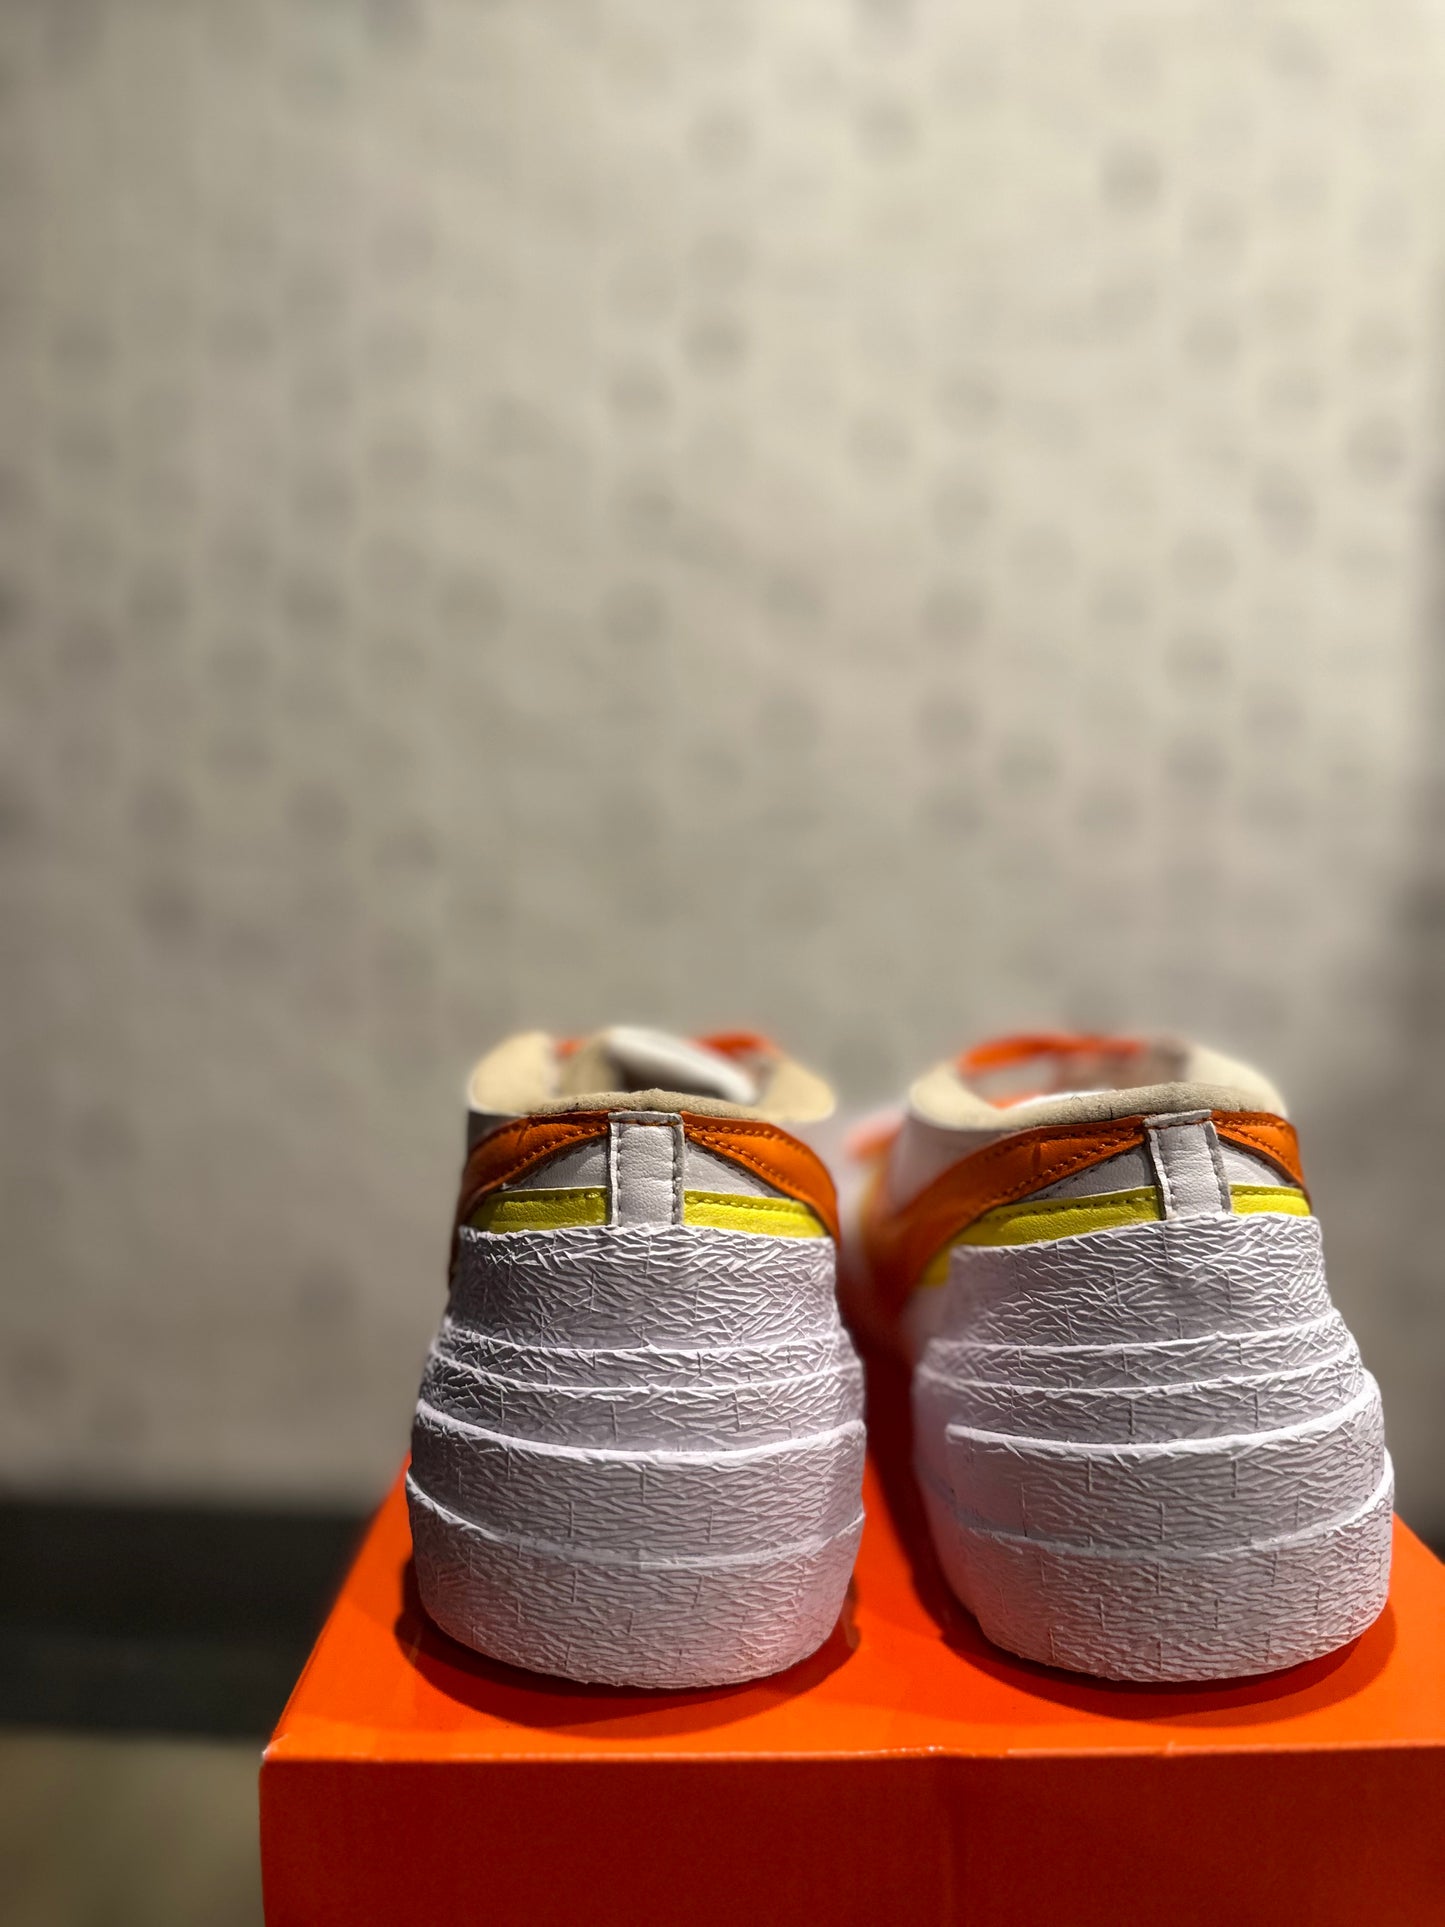 Nike x Sacai Blazer Low “Magma Orange” Size 9.5 PO OG